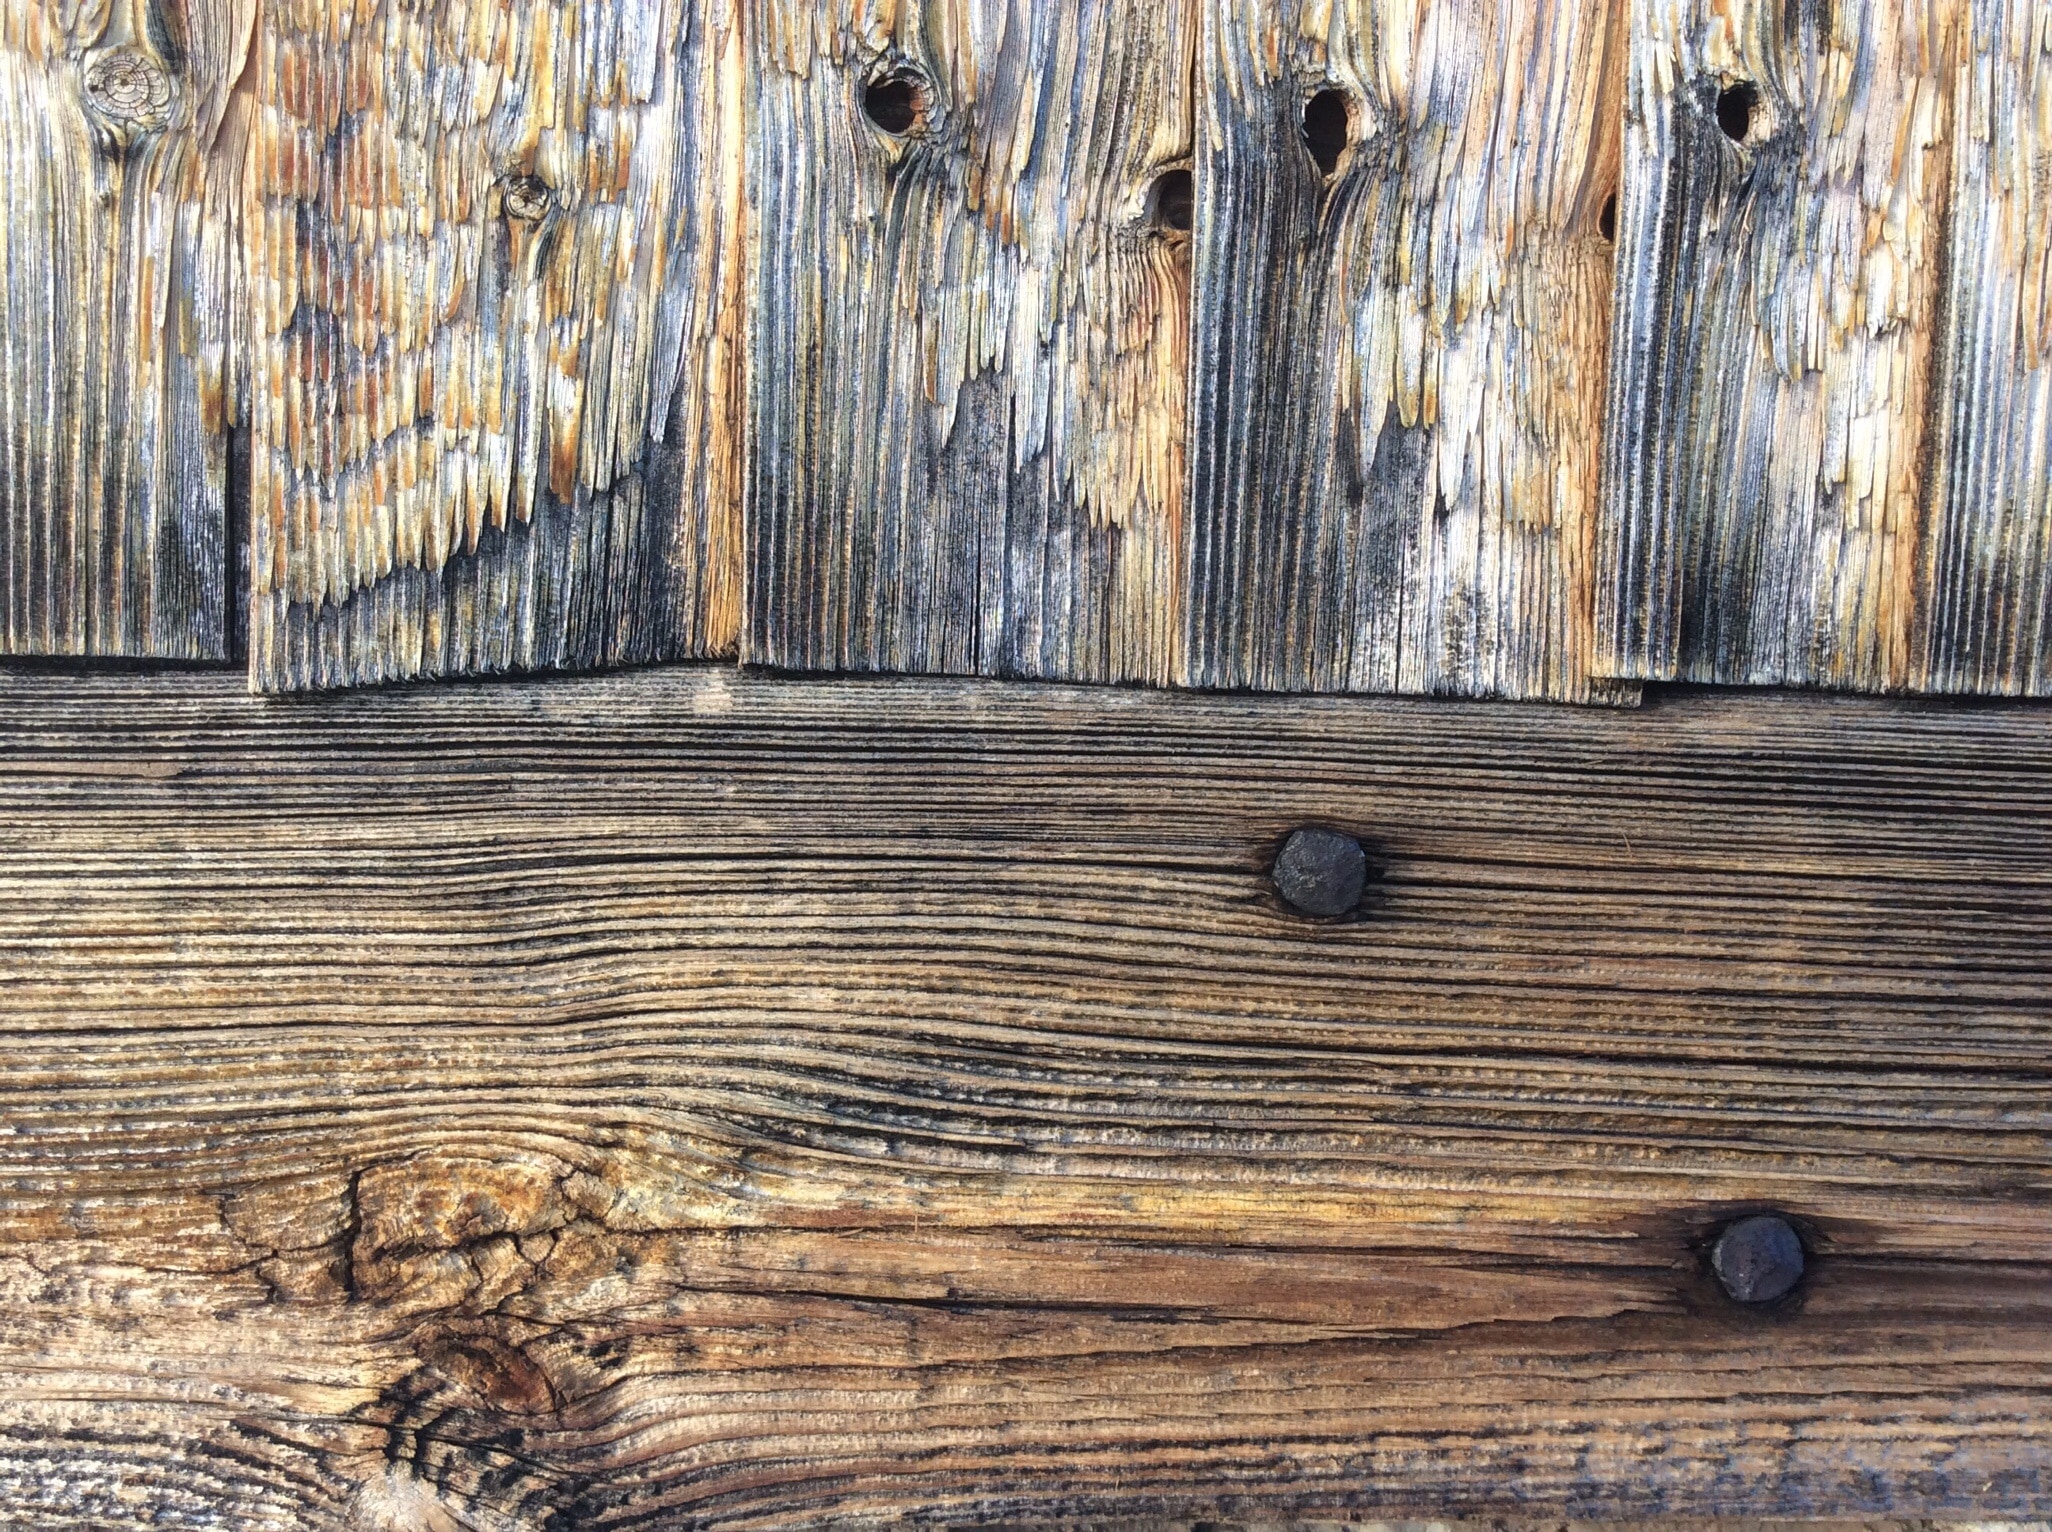 Старая деревянная доска